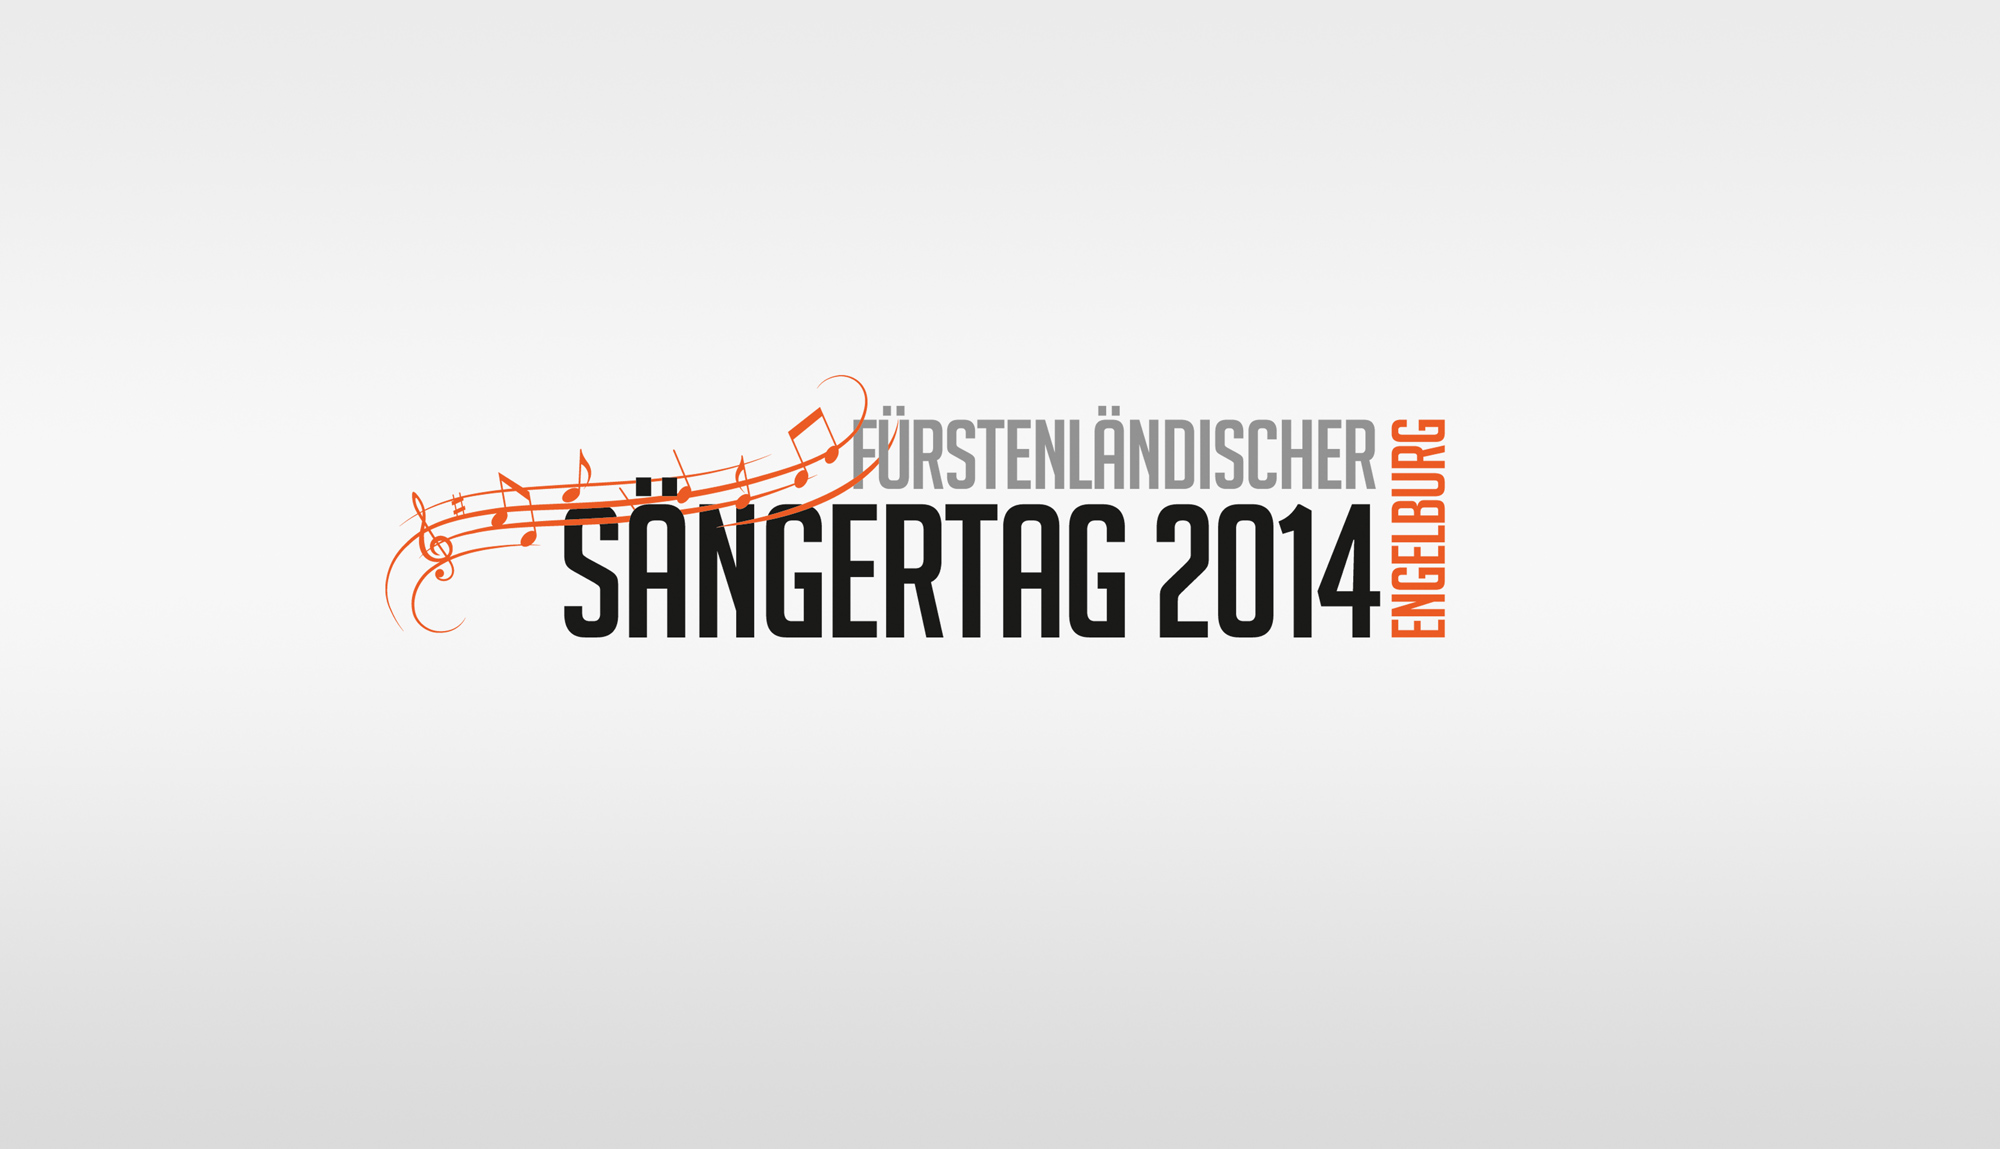 Sängertag Logo variabel Medienvielfalt